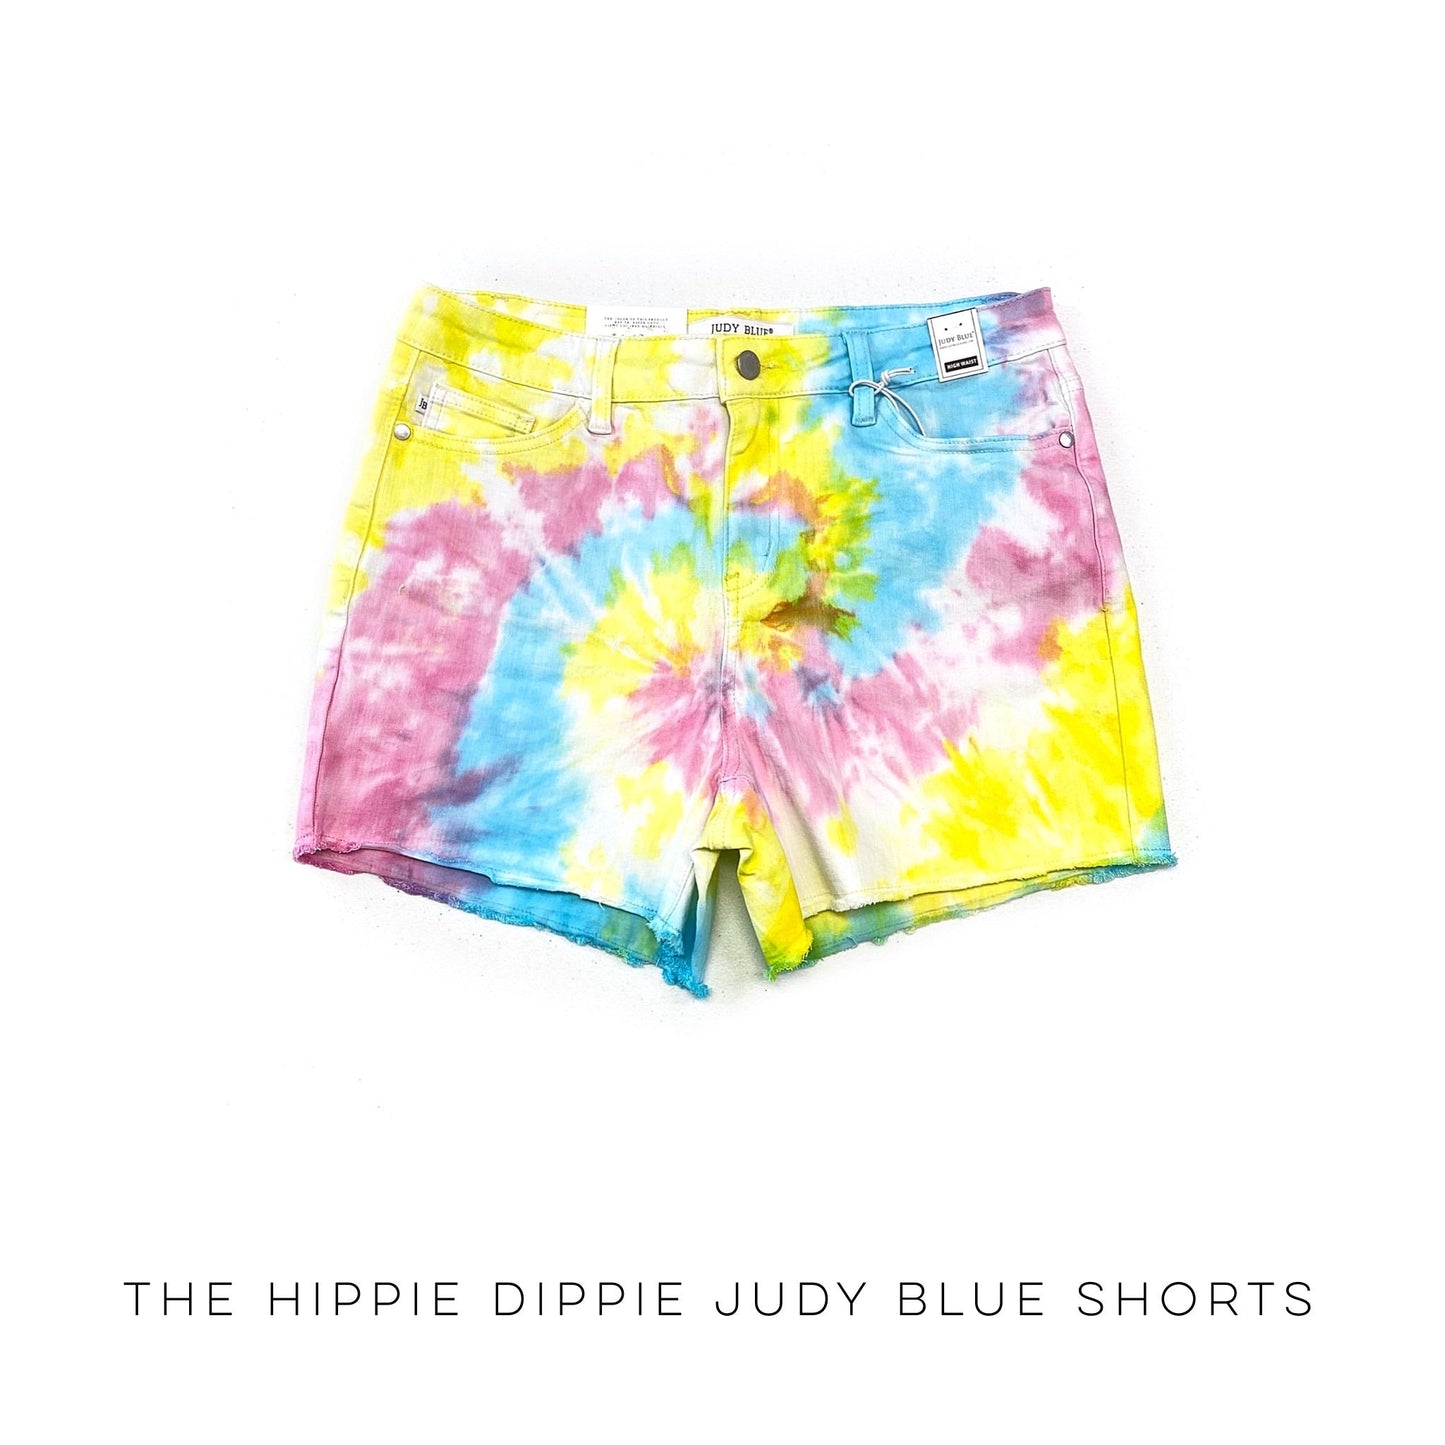 The Hippie Dippie Judy Blue Shorts